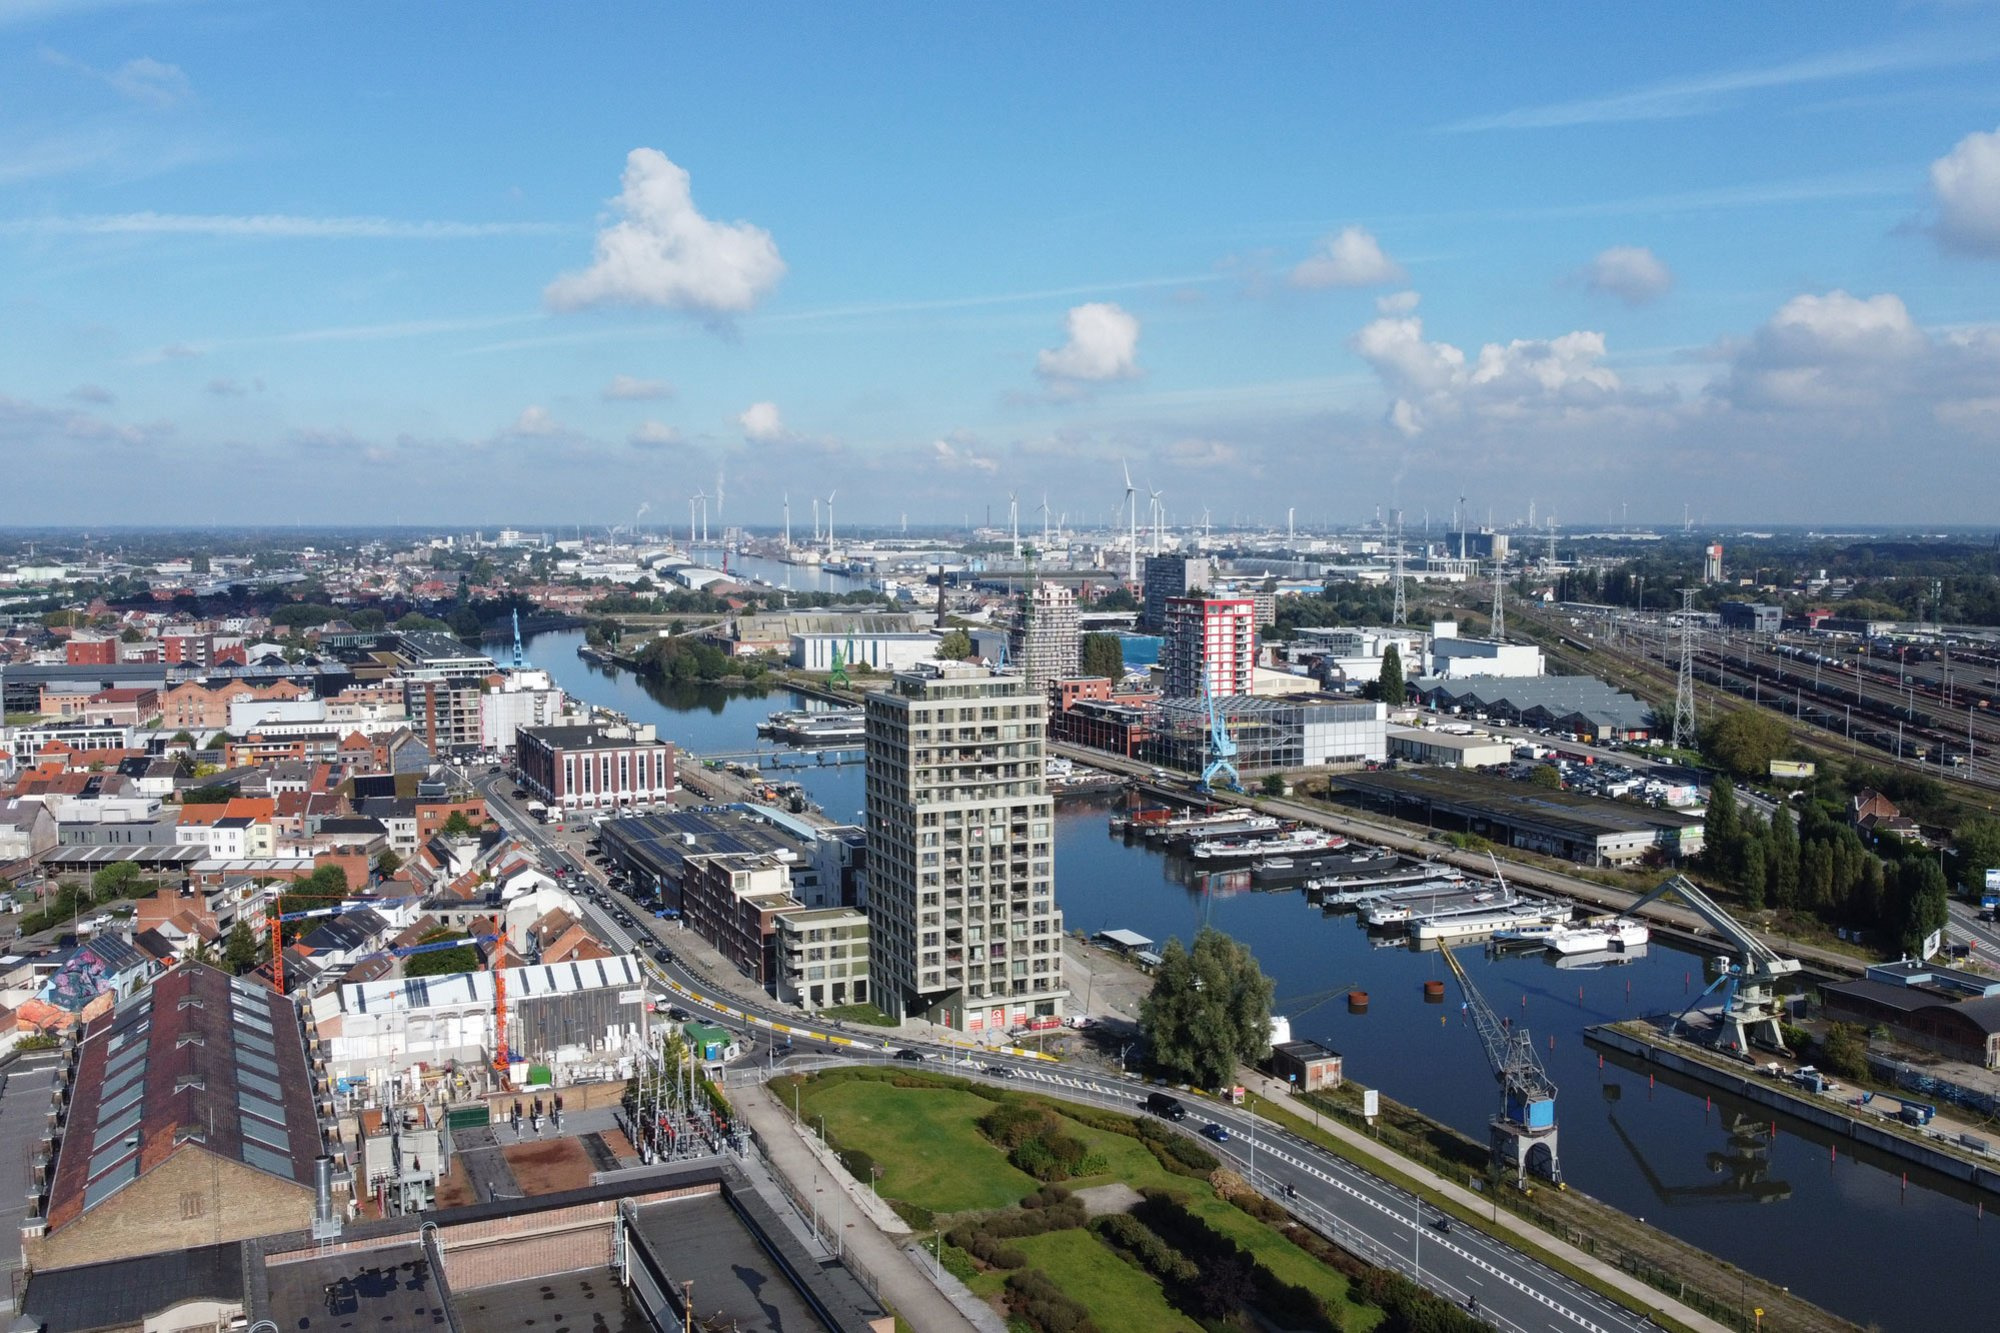 De Nieuwe Dokken n'est qu'une partie d'un projet de rénovation urbaine beaucoup plus vaste, appelé, à tort, De Oude Dokken., GF